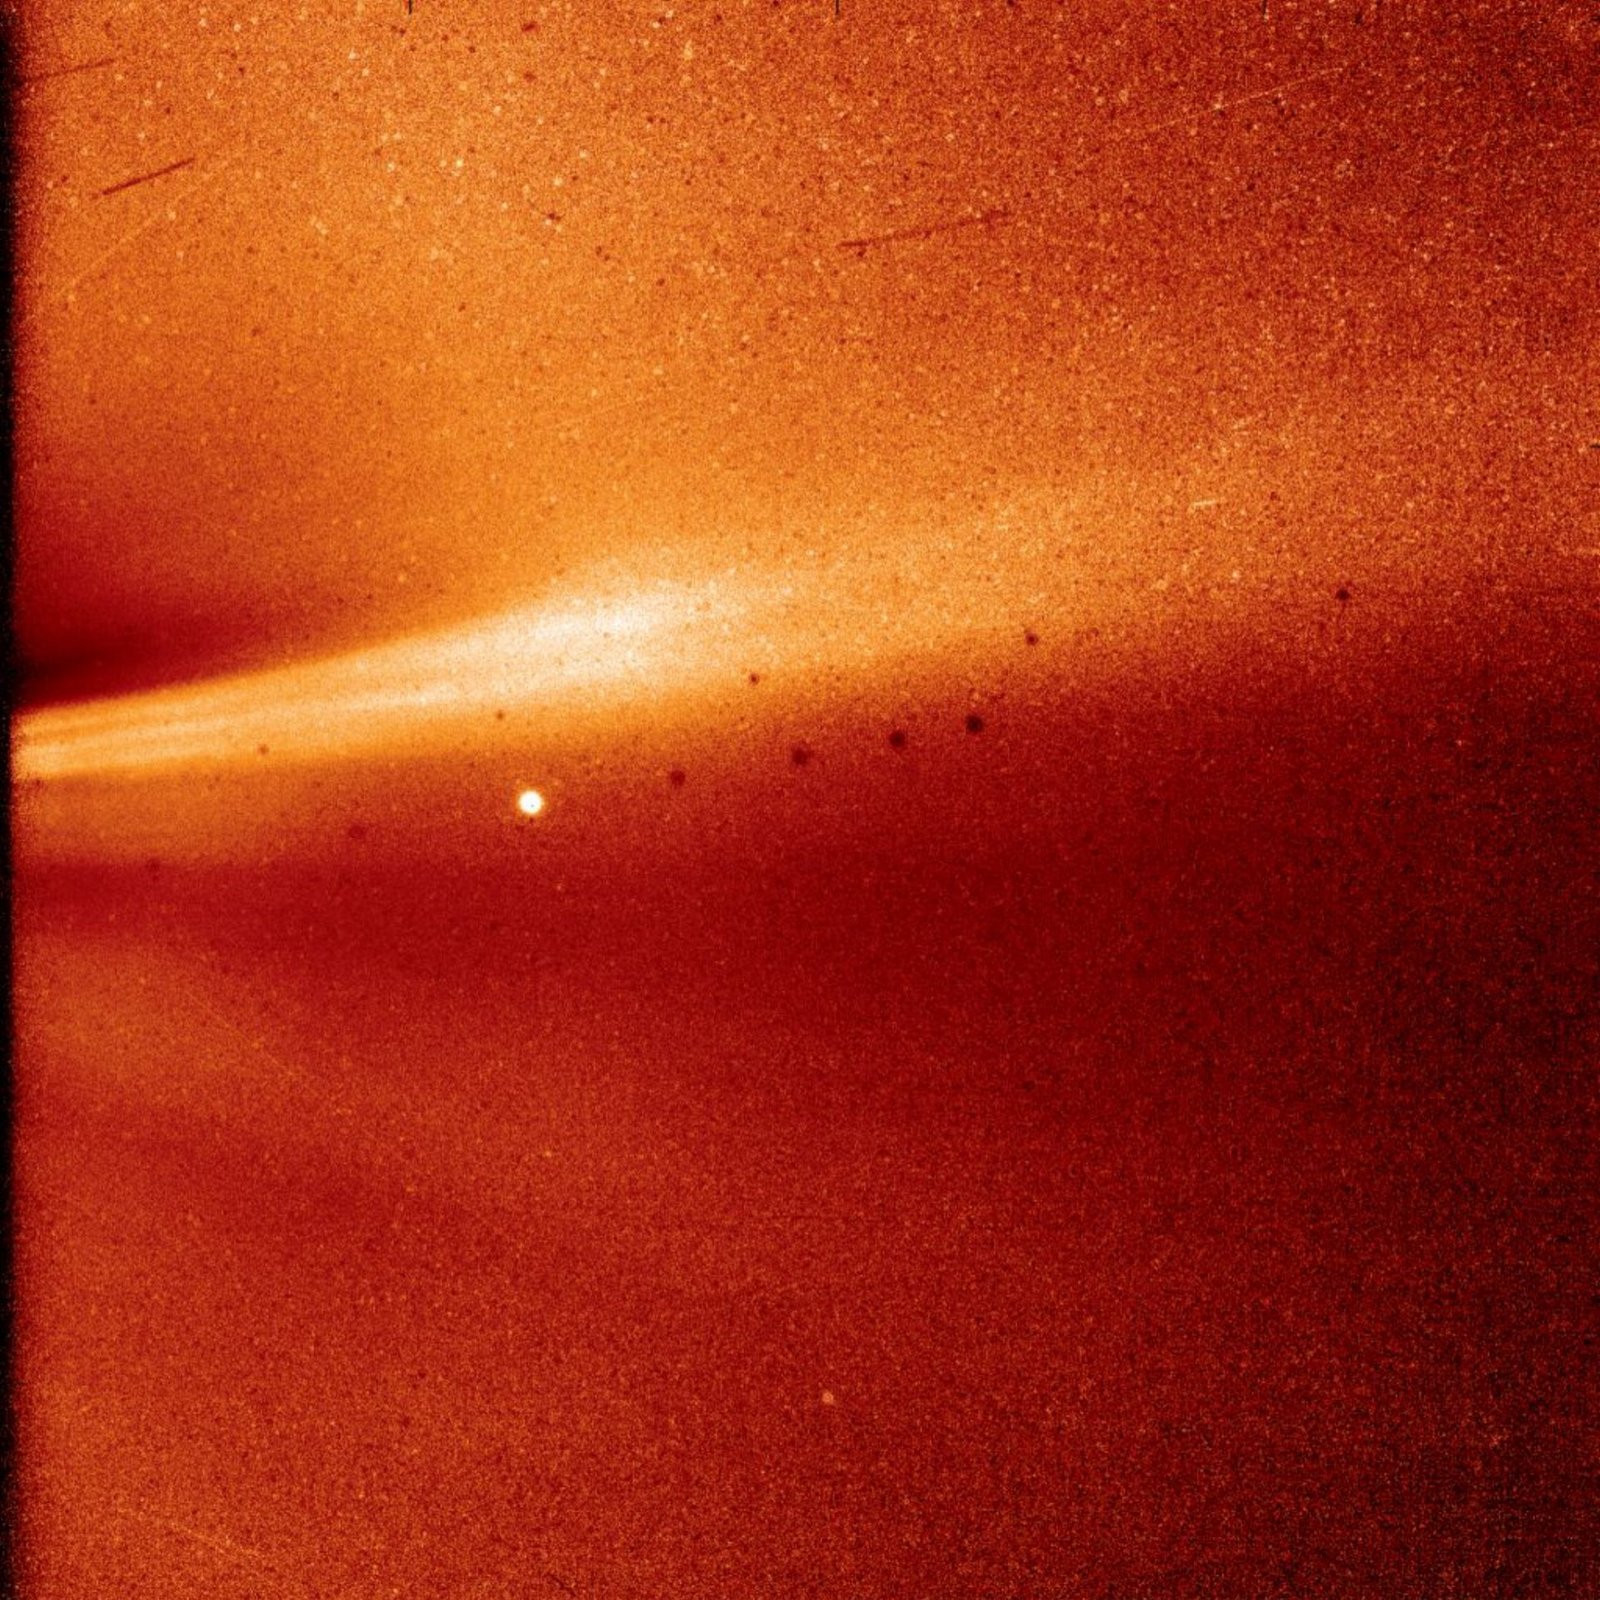 Güneş'e en yakın fotoğraf Parker Wispr tarafından çekildi